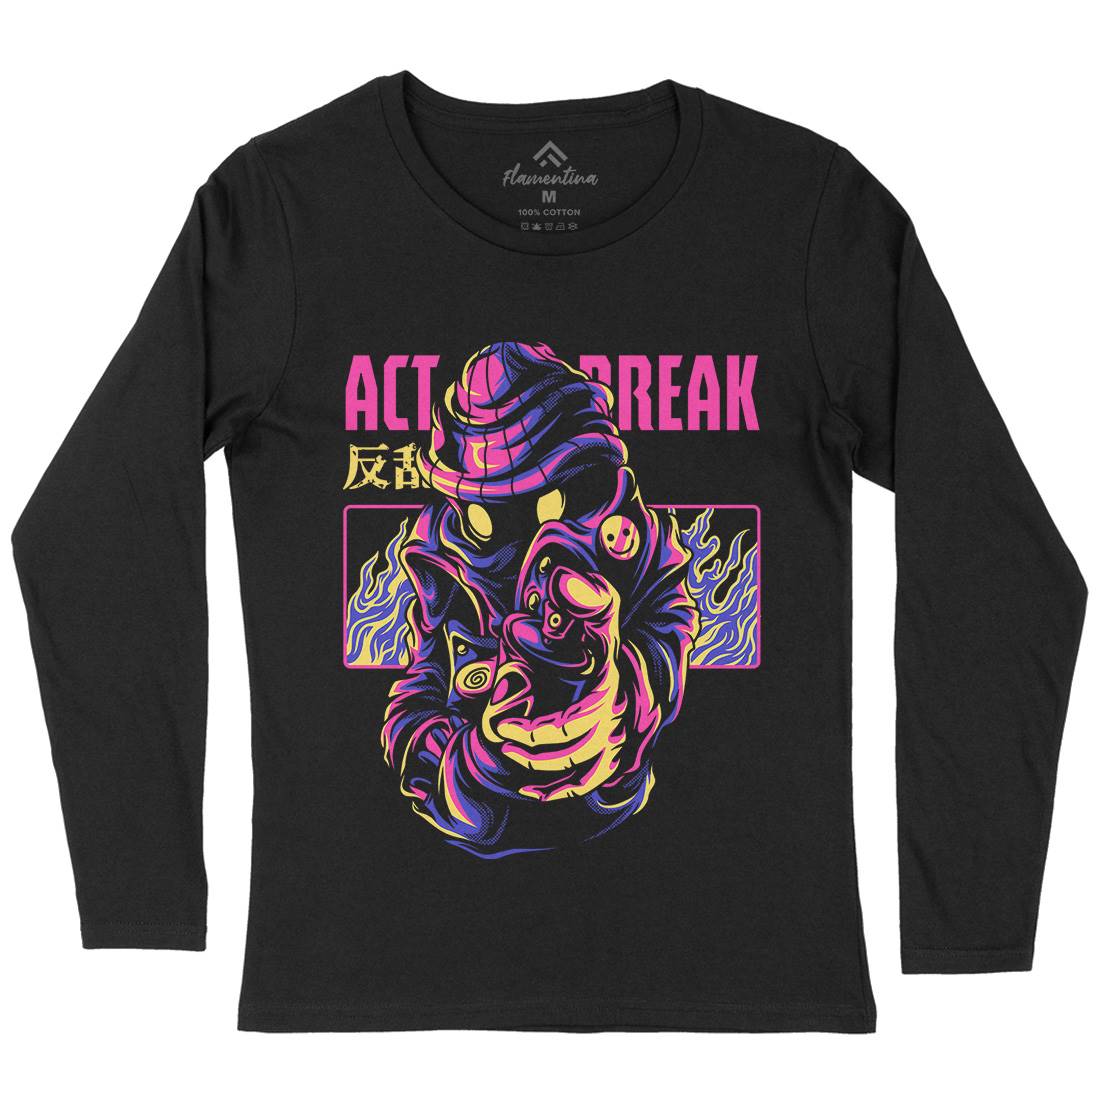 Act Break Womens Long Sleeve T-Shirt Graffiti D700